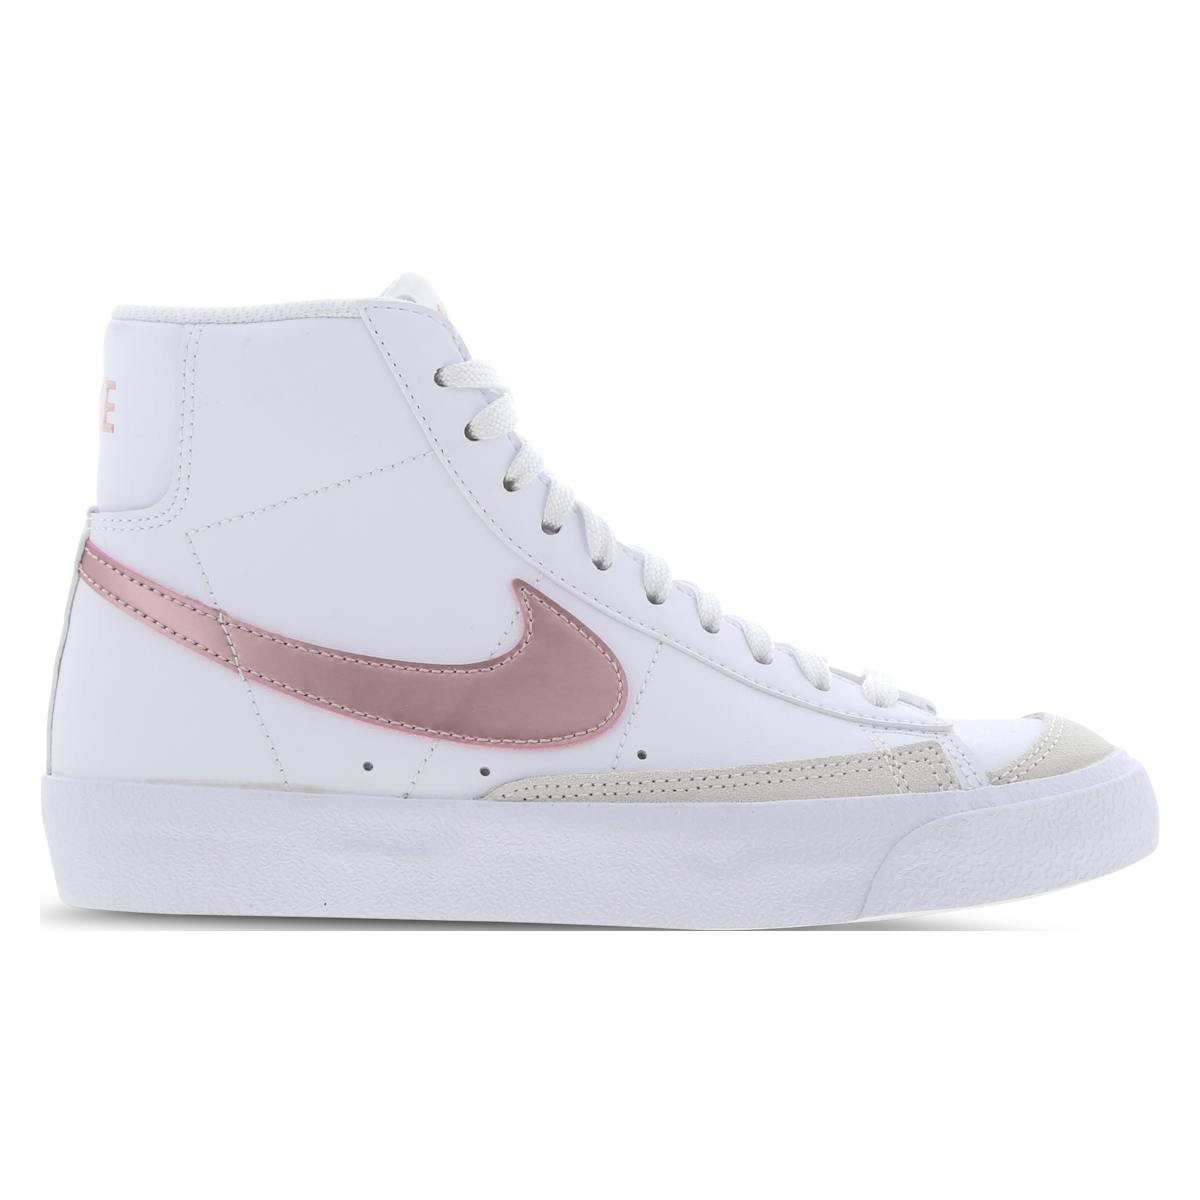 Nike Blazer Mid 77 White Pink Glaze (GS)